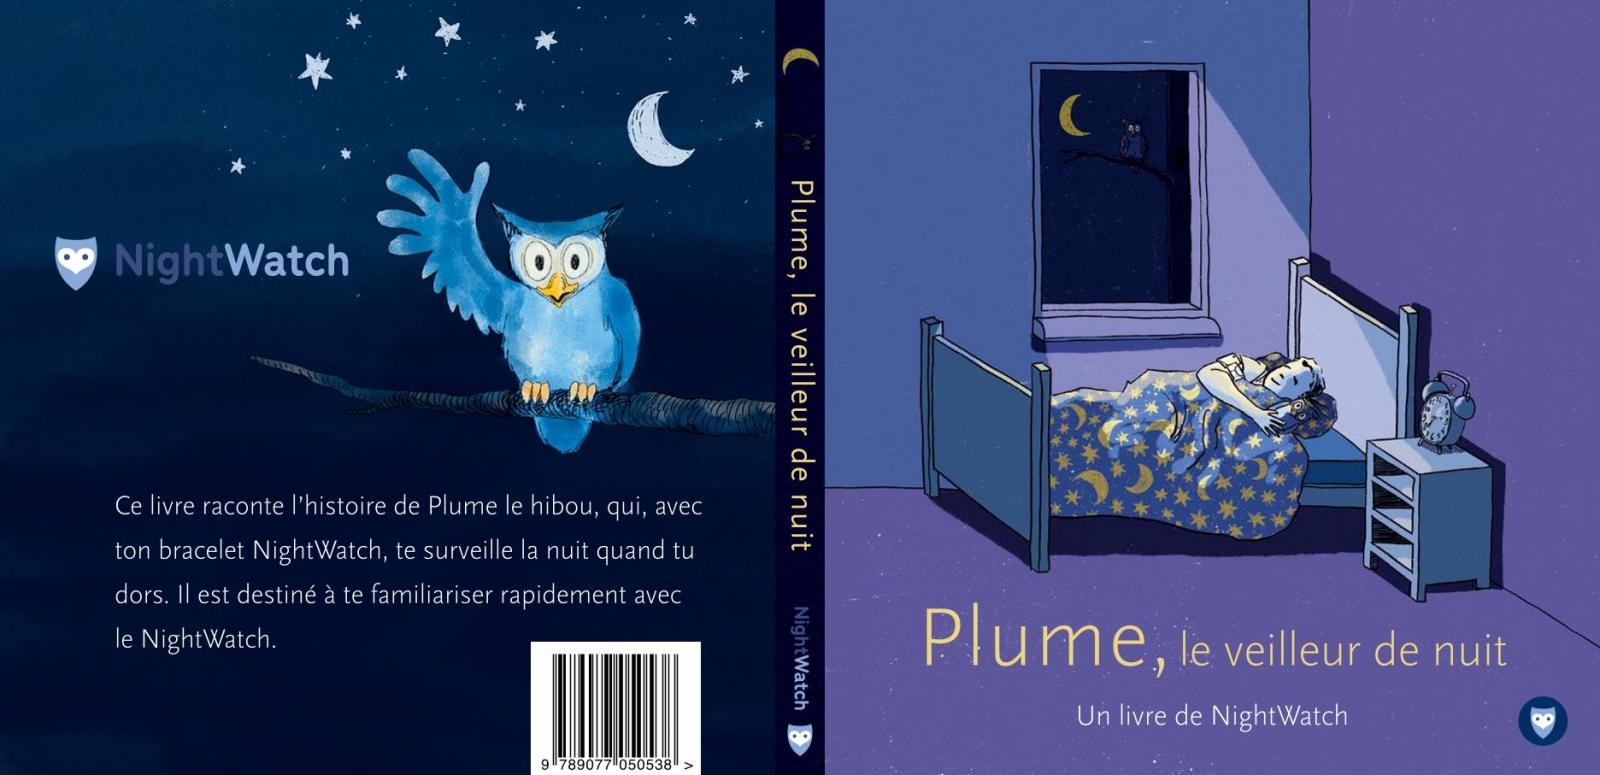 Plume, le veilleur de nuit -  een Nightwatchboek, Franse vertaling door Anne Marie Westra